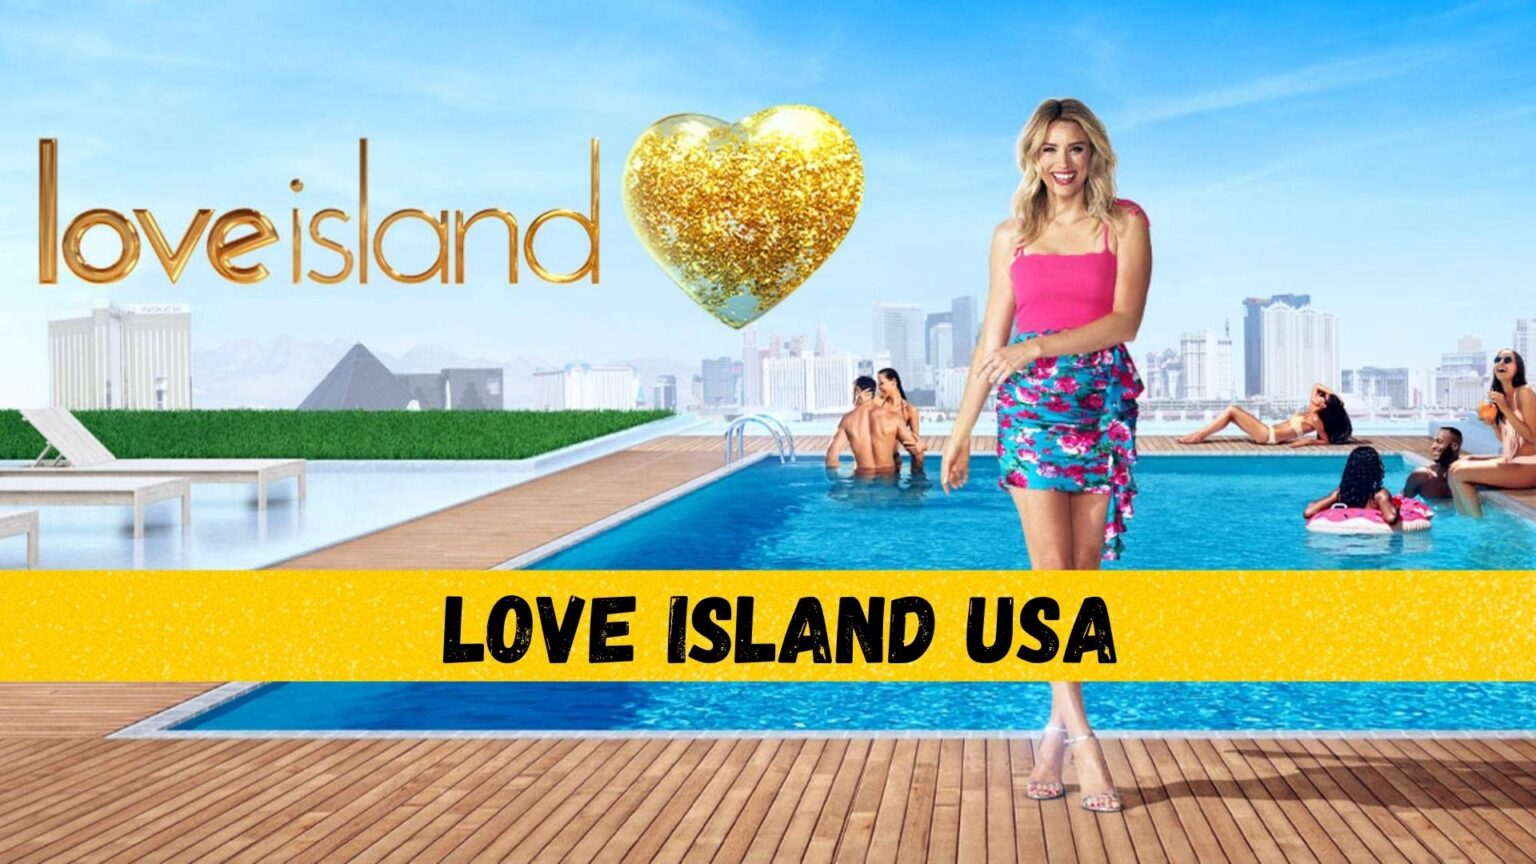 Love Island USA  1536x864 